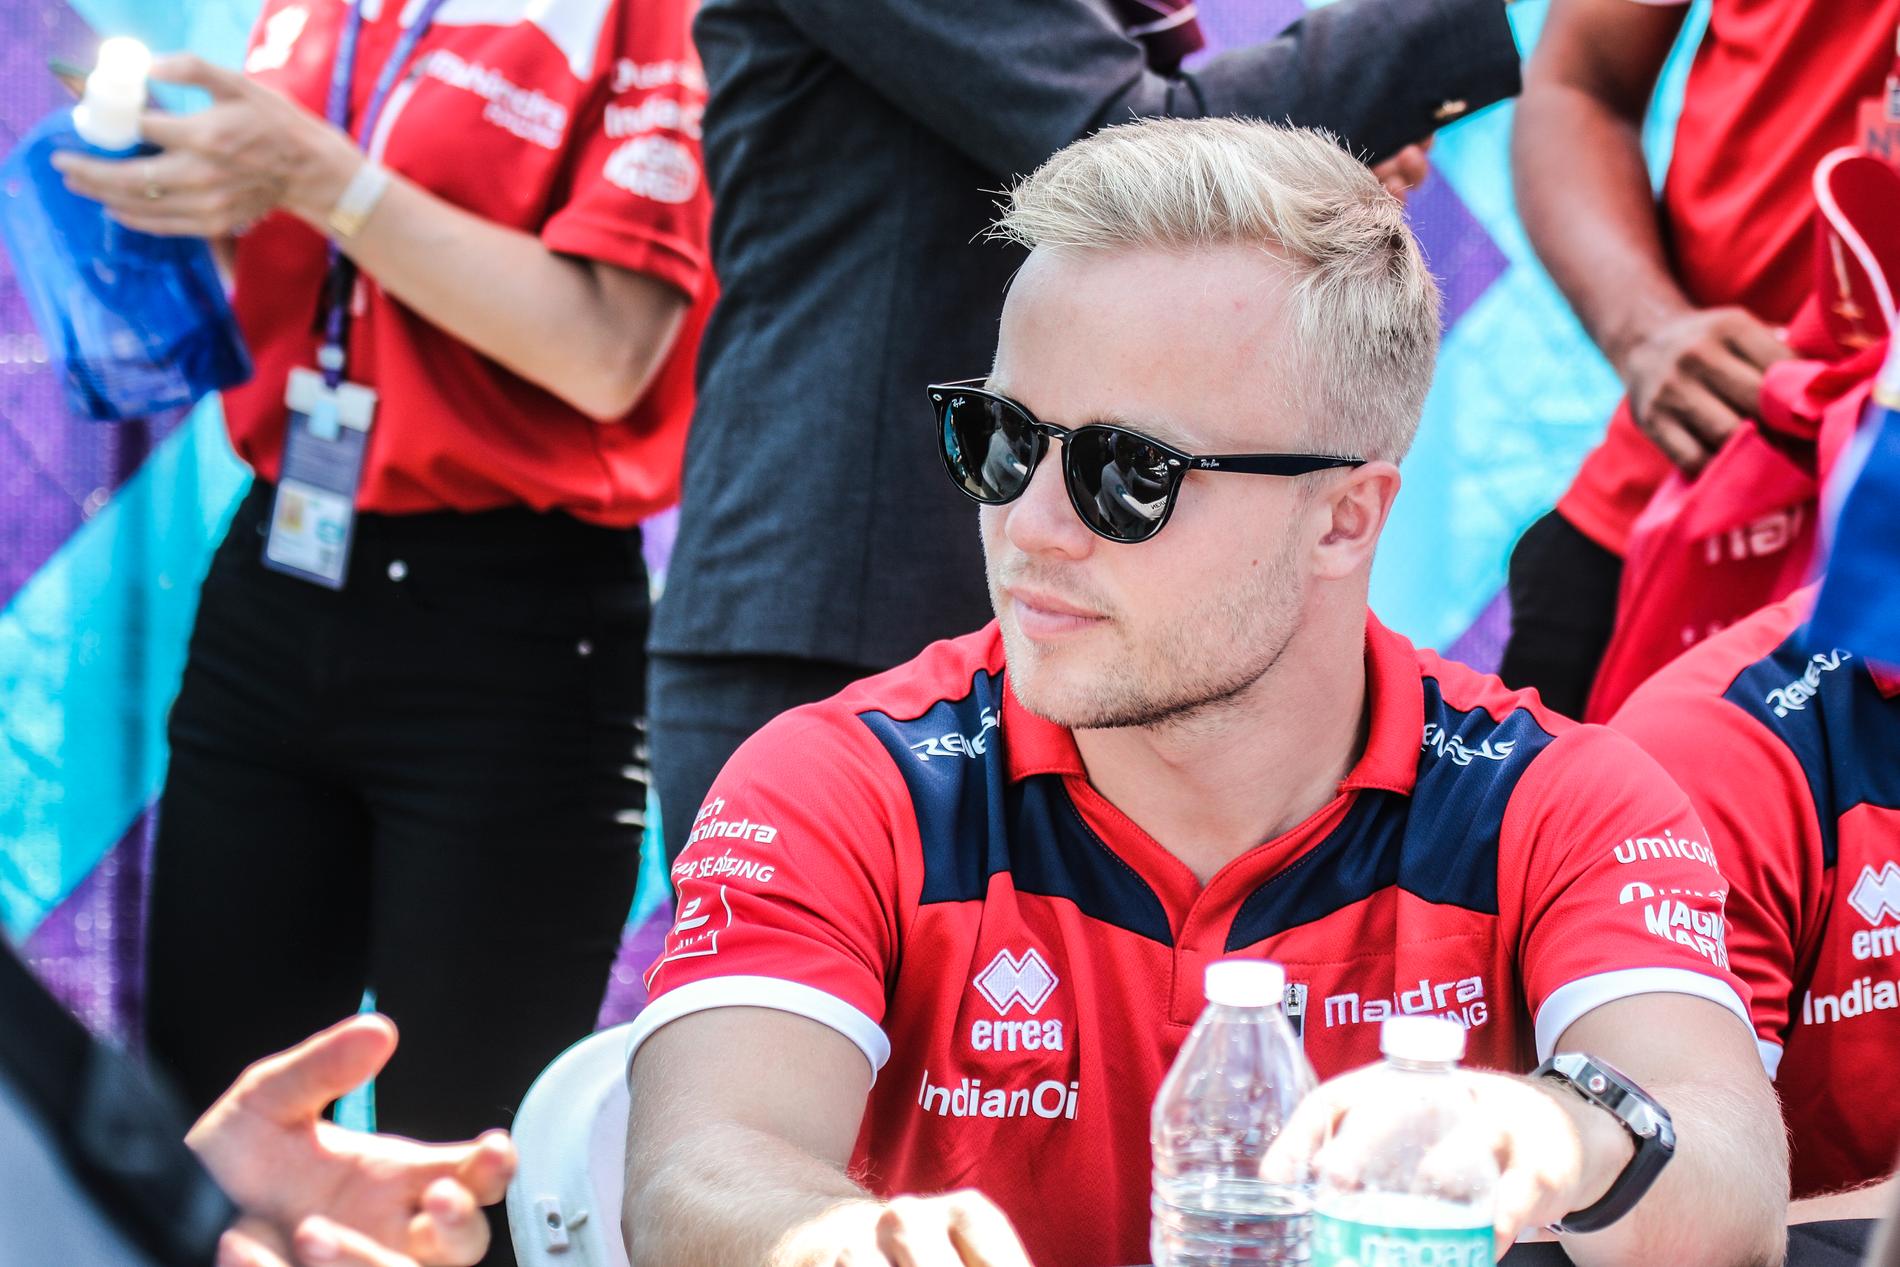 Felix Rosenqvist kör Indycar nästa år - blir det två svenskar i Indy 500 2019?